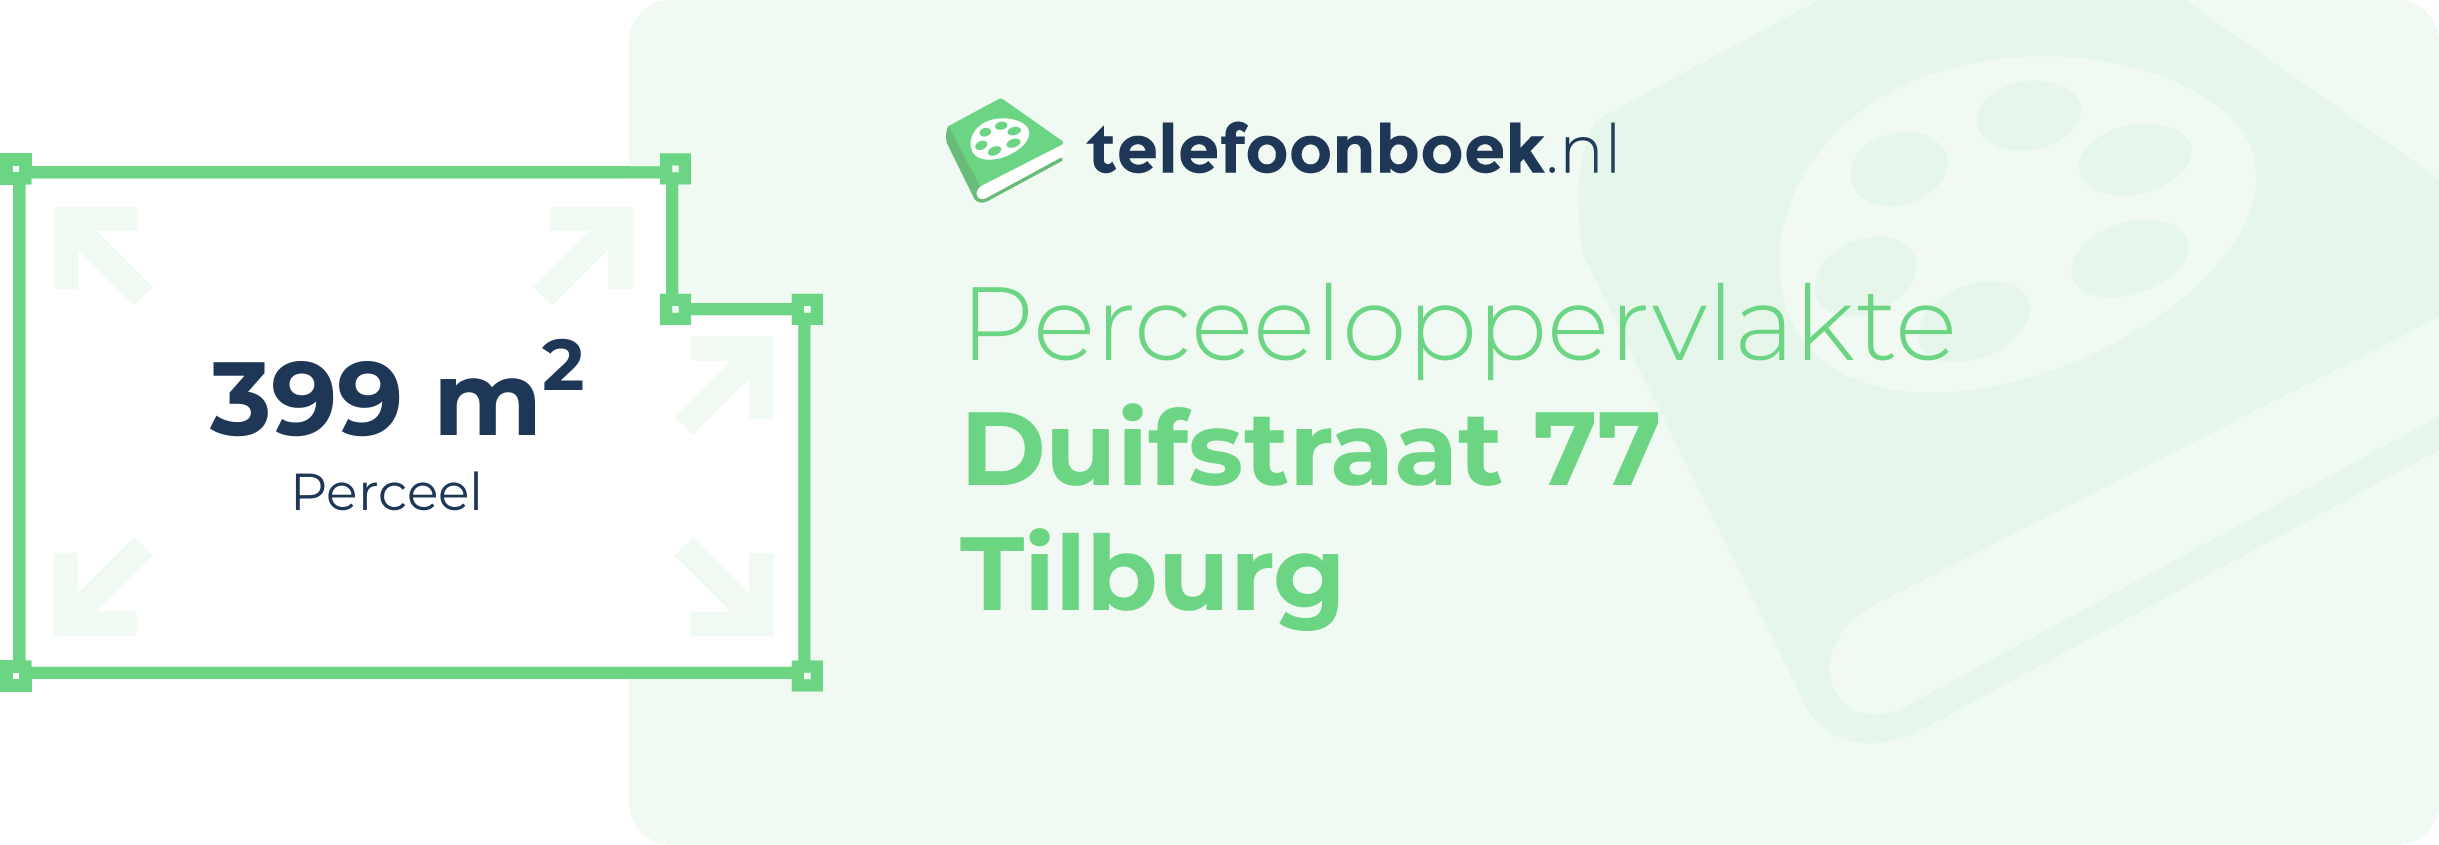 Perceeloppervlakte Duifstraat 77 Tilburg